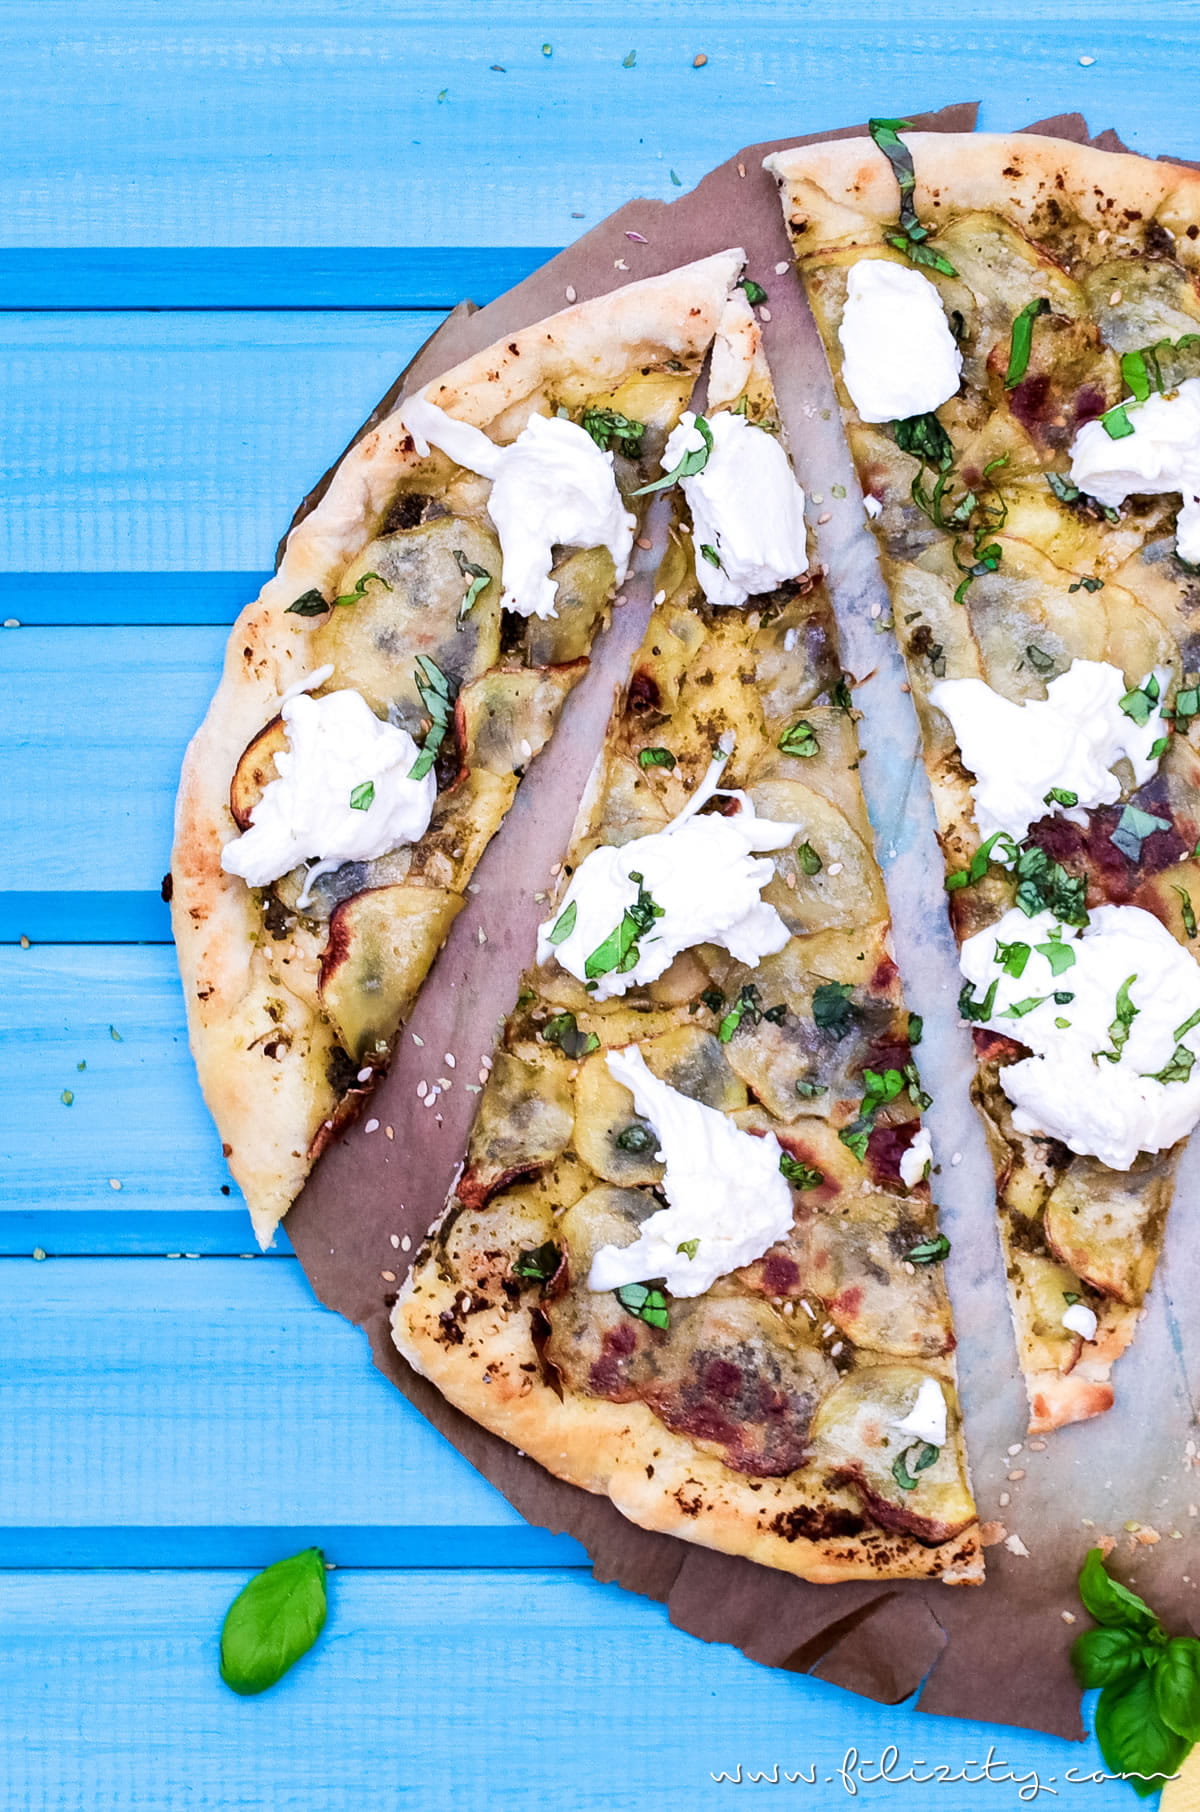 Kartoffel-Pizza mit Pesto - Mein bestes Rezept (auch vegan) | Filizity.com | Food-Blog aus dem Rheinland #pizza #veggie